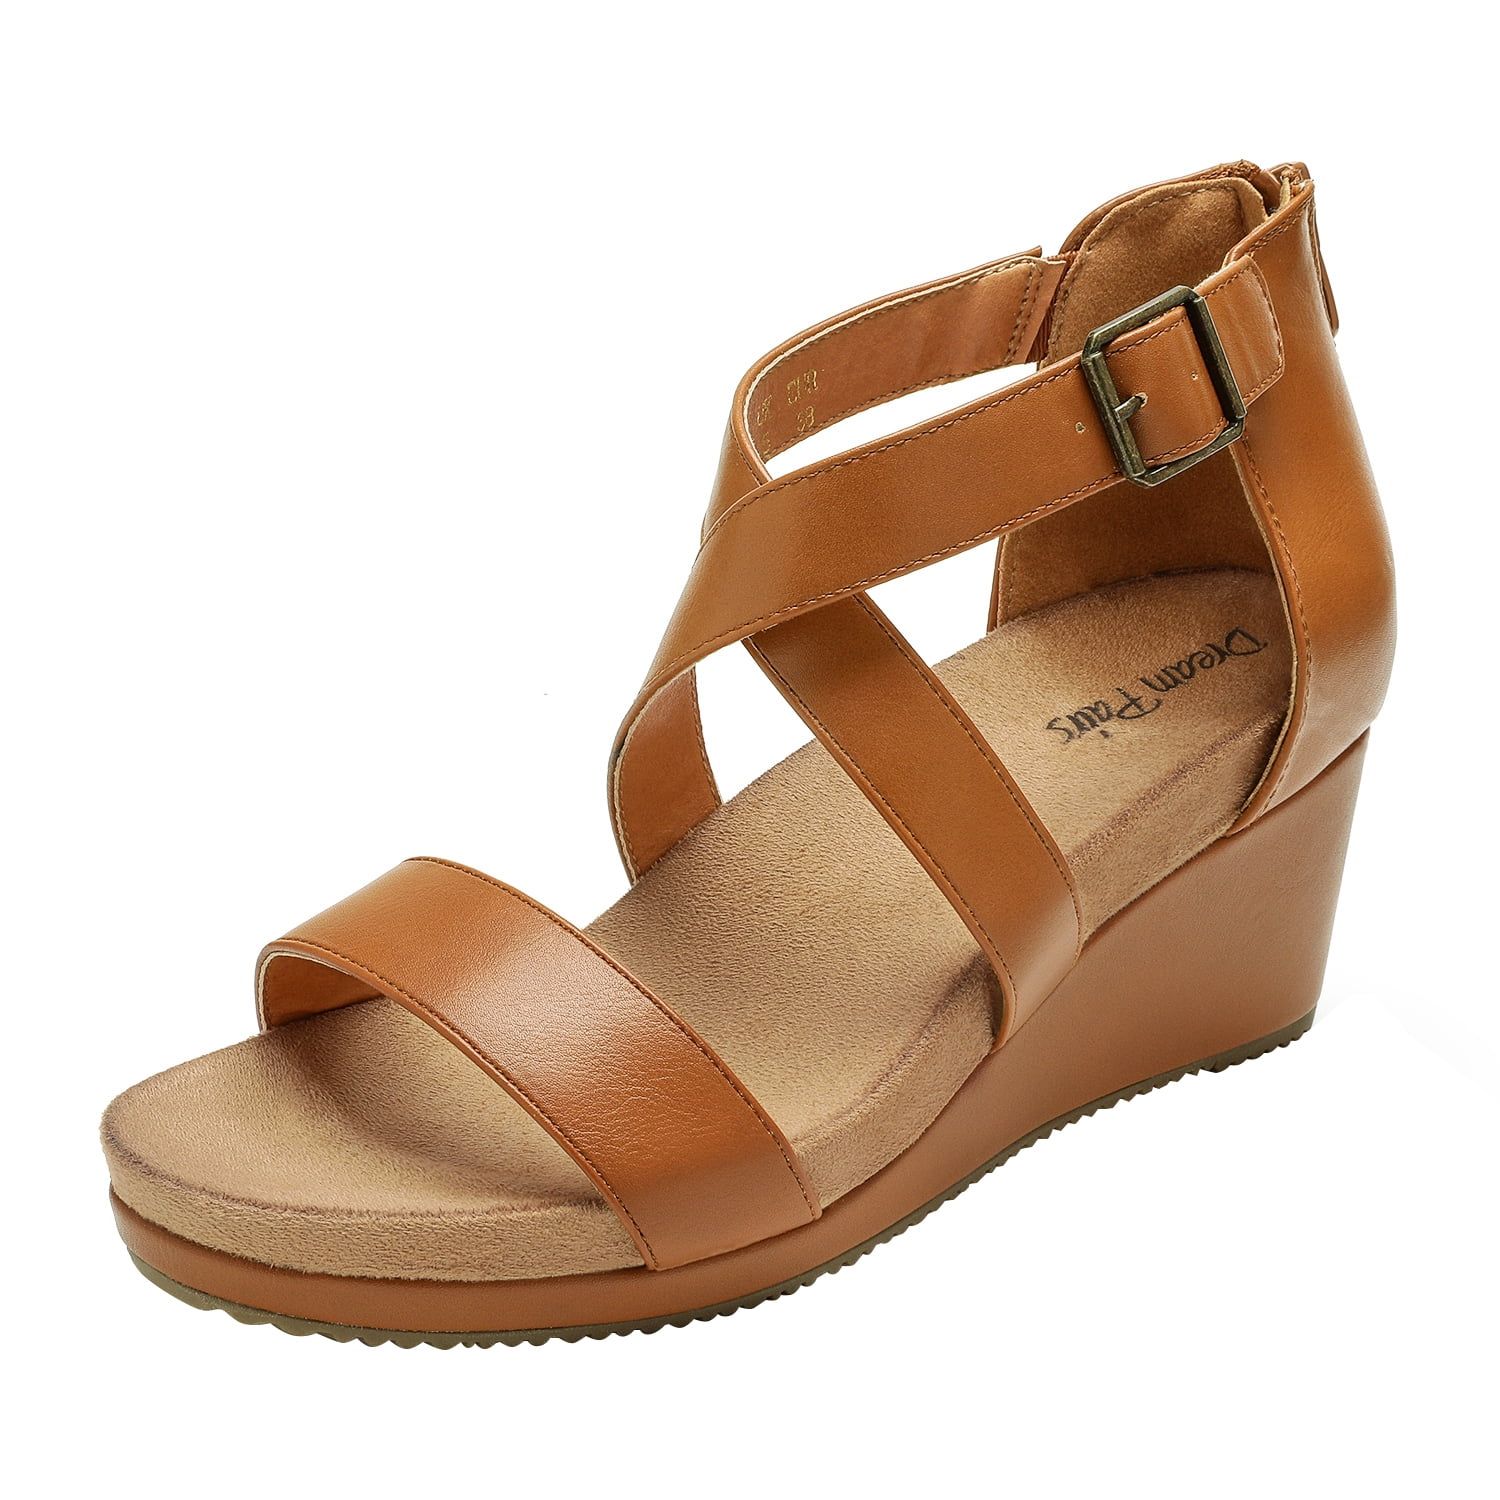 DREAM PAIRS Women Wedge Sandals Fashion Ankle Strap Sandals Shoes Open Toe Platform Back Zipper D... | Walmart (US)